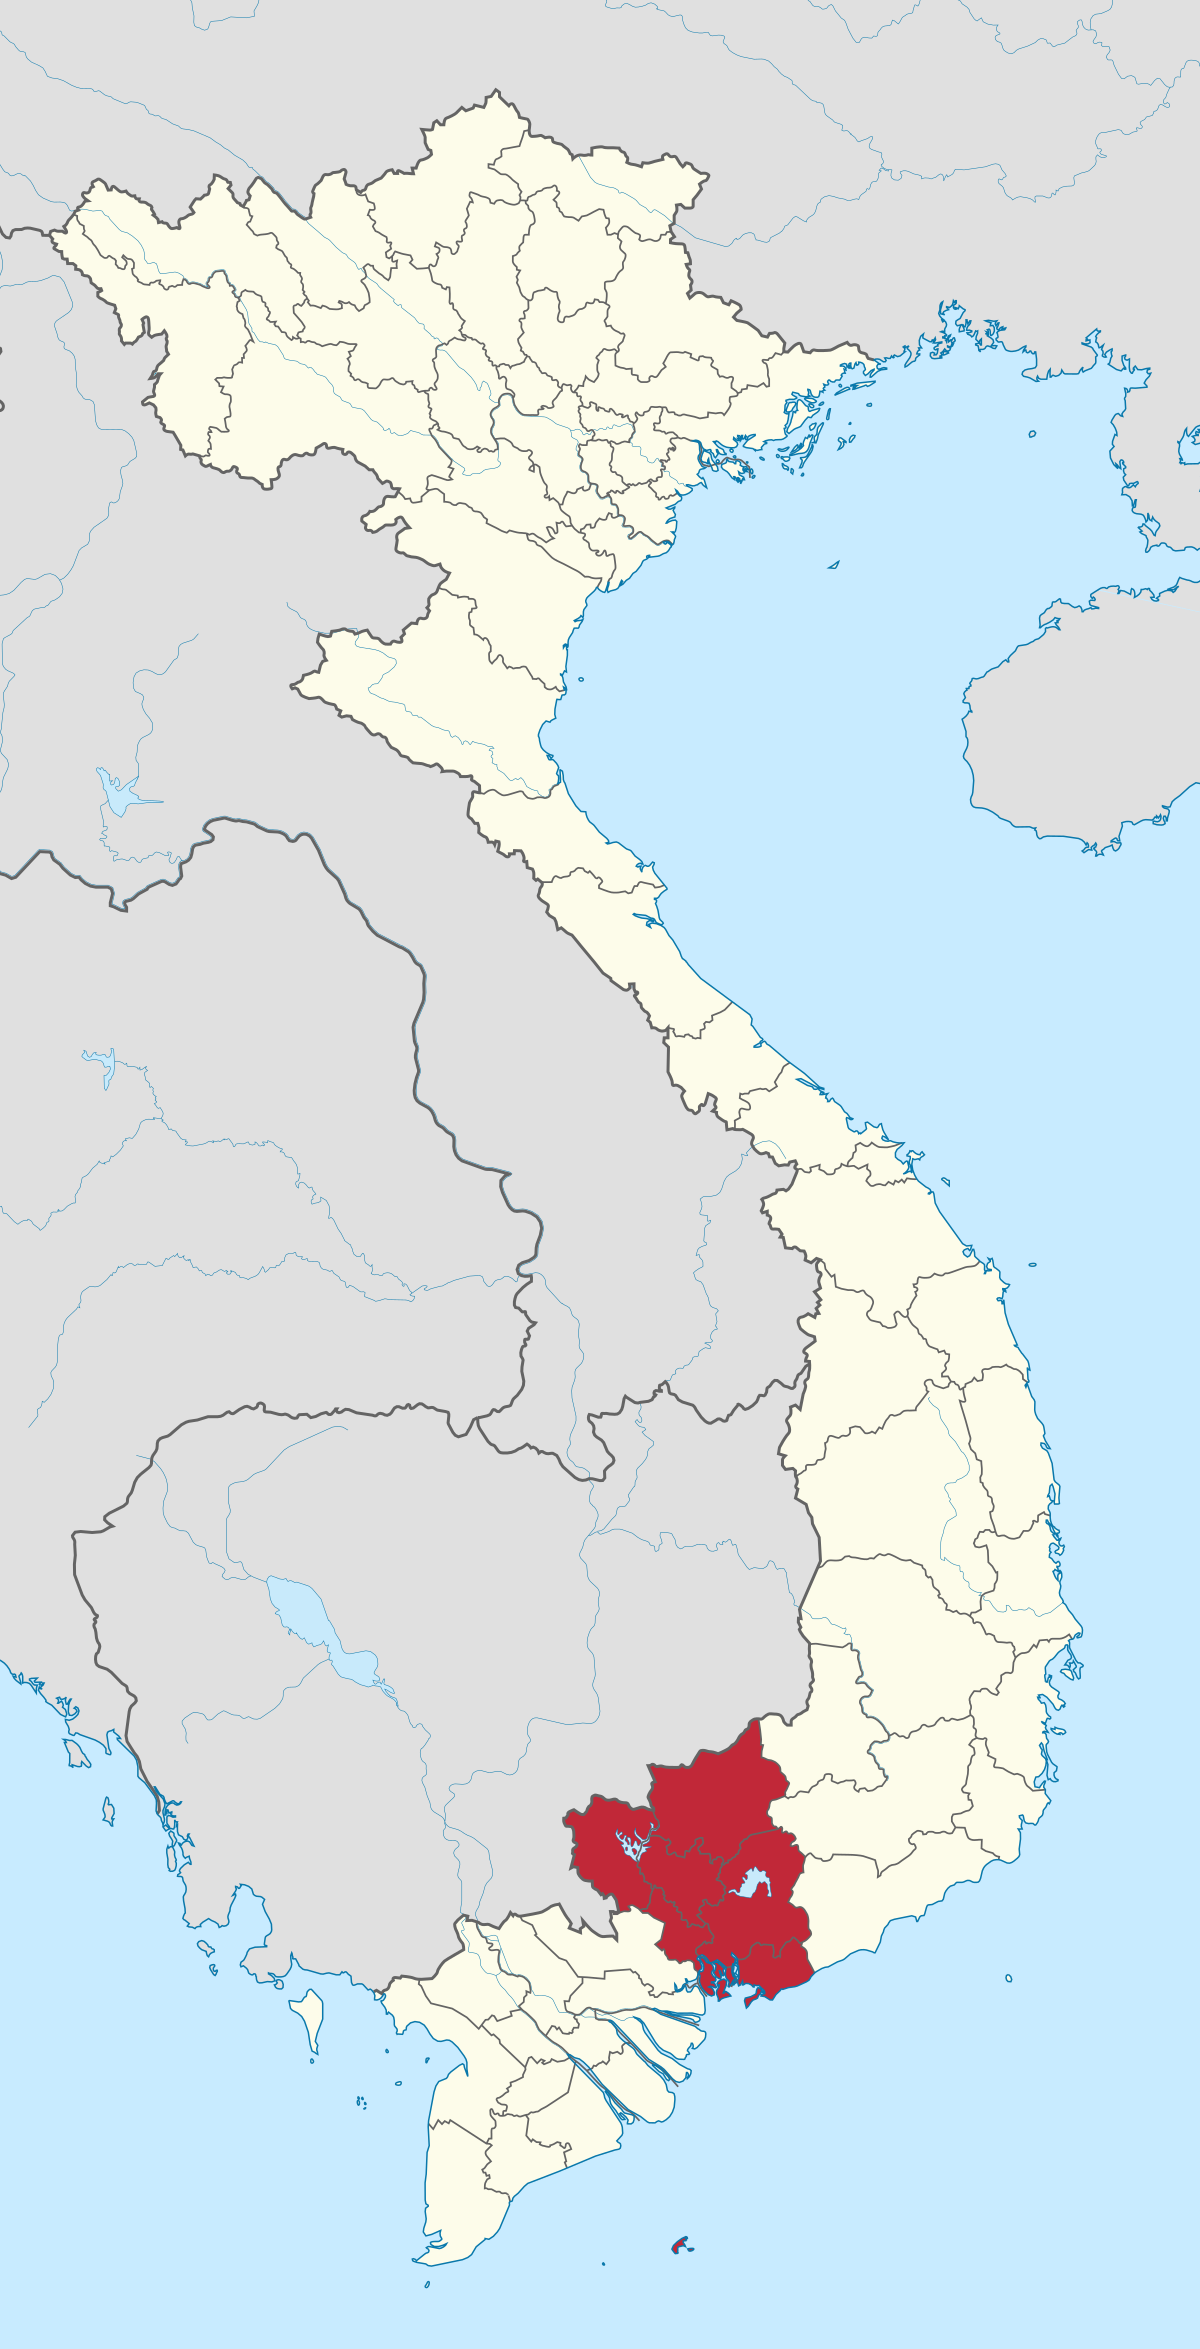 Đông Nam Bộ – Wikipedia tiếng Việt